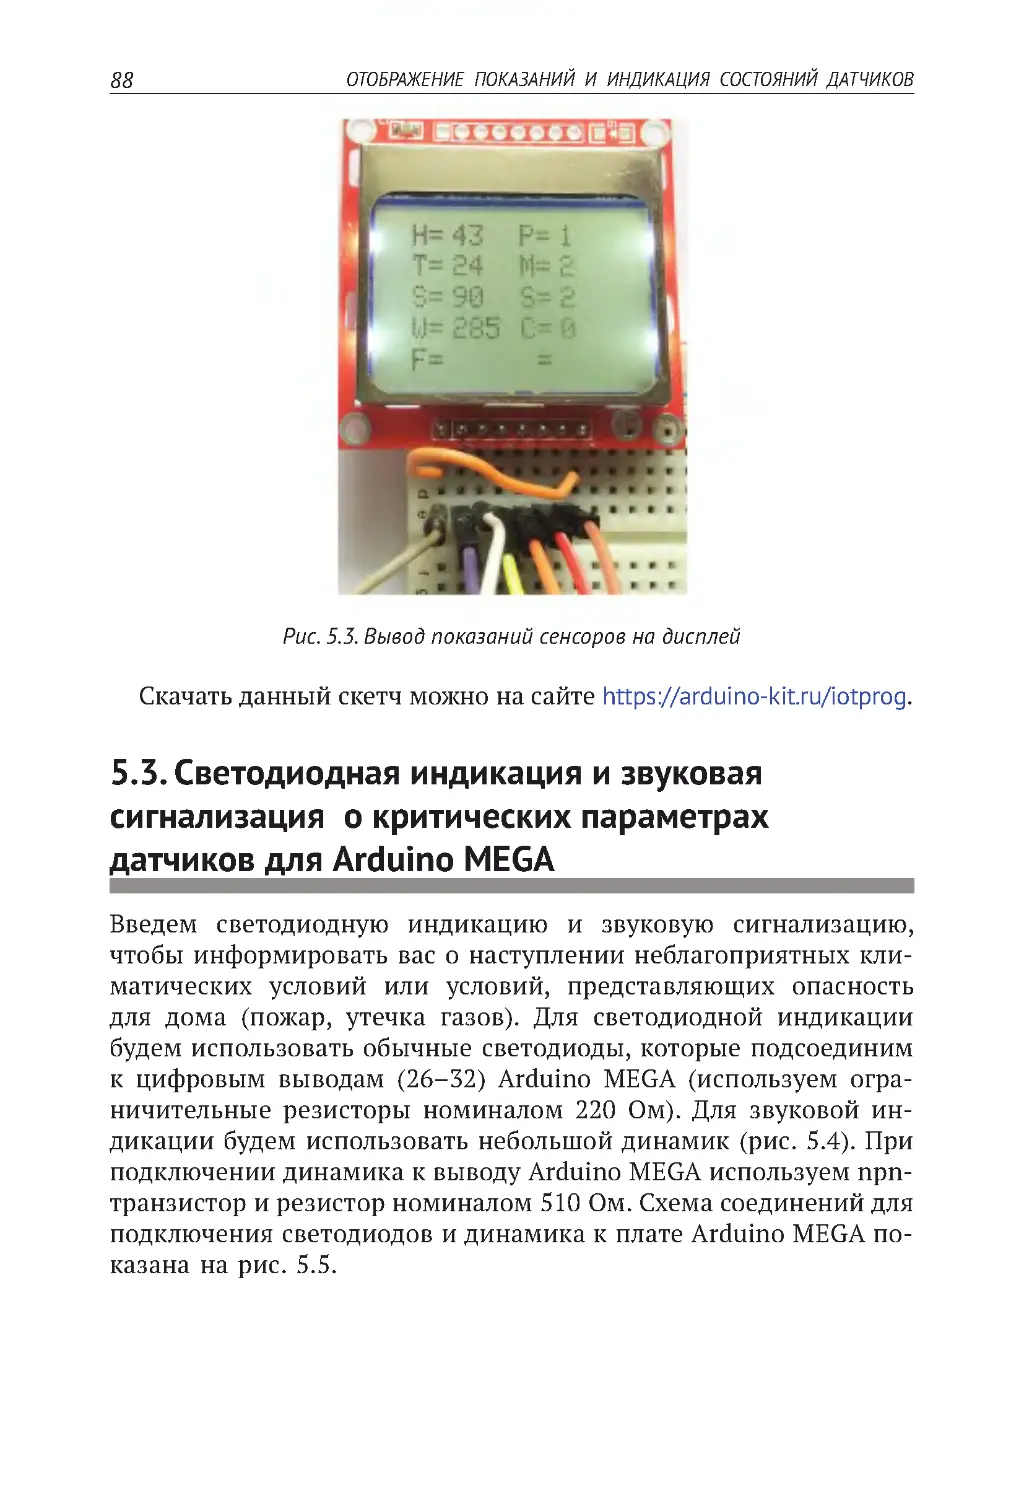 5.3. Светодиодная индикация и звуковая сигнализация  о критических параметрах датчиков для Arduino MEGA